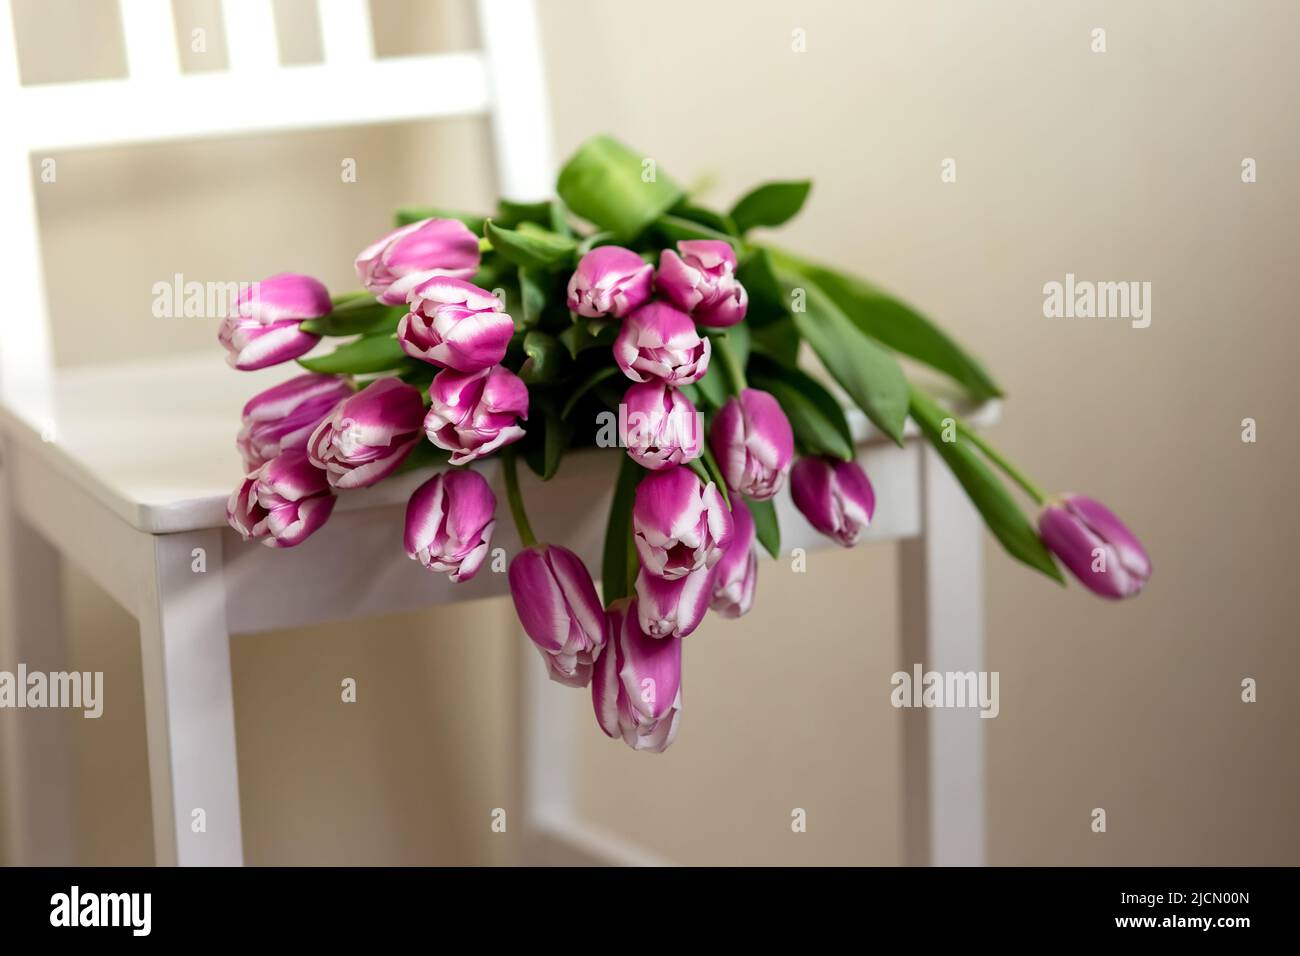 Los tulipanes púrpura se encuentran en una silla blanca, en una habitación Foto de stock